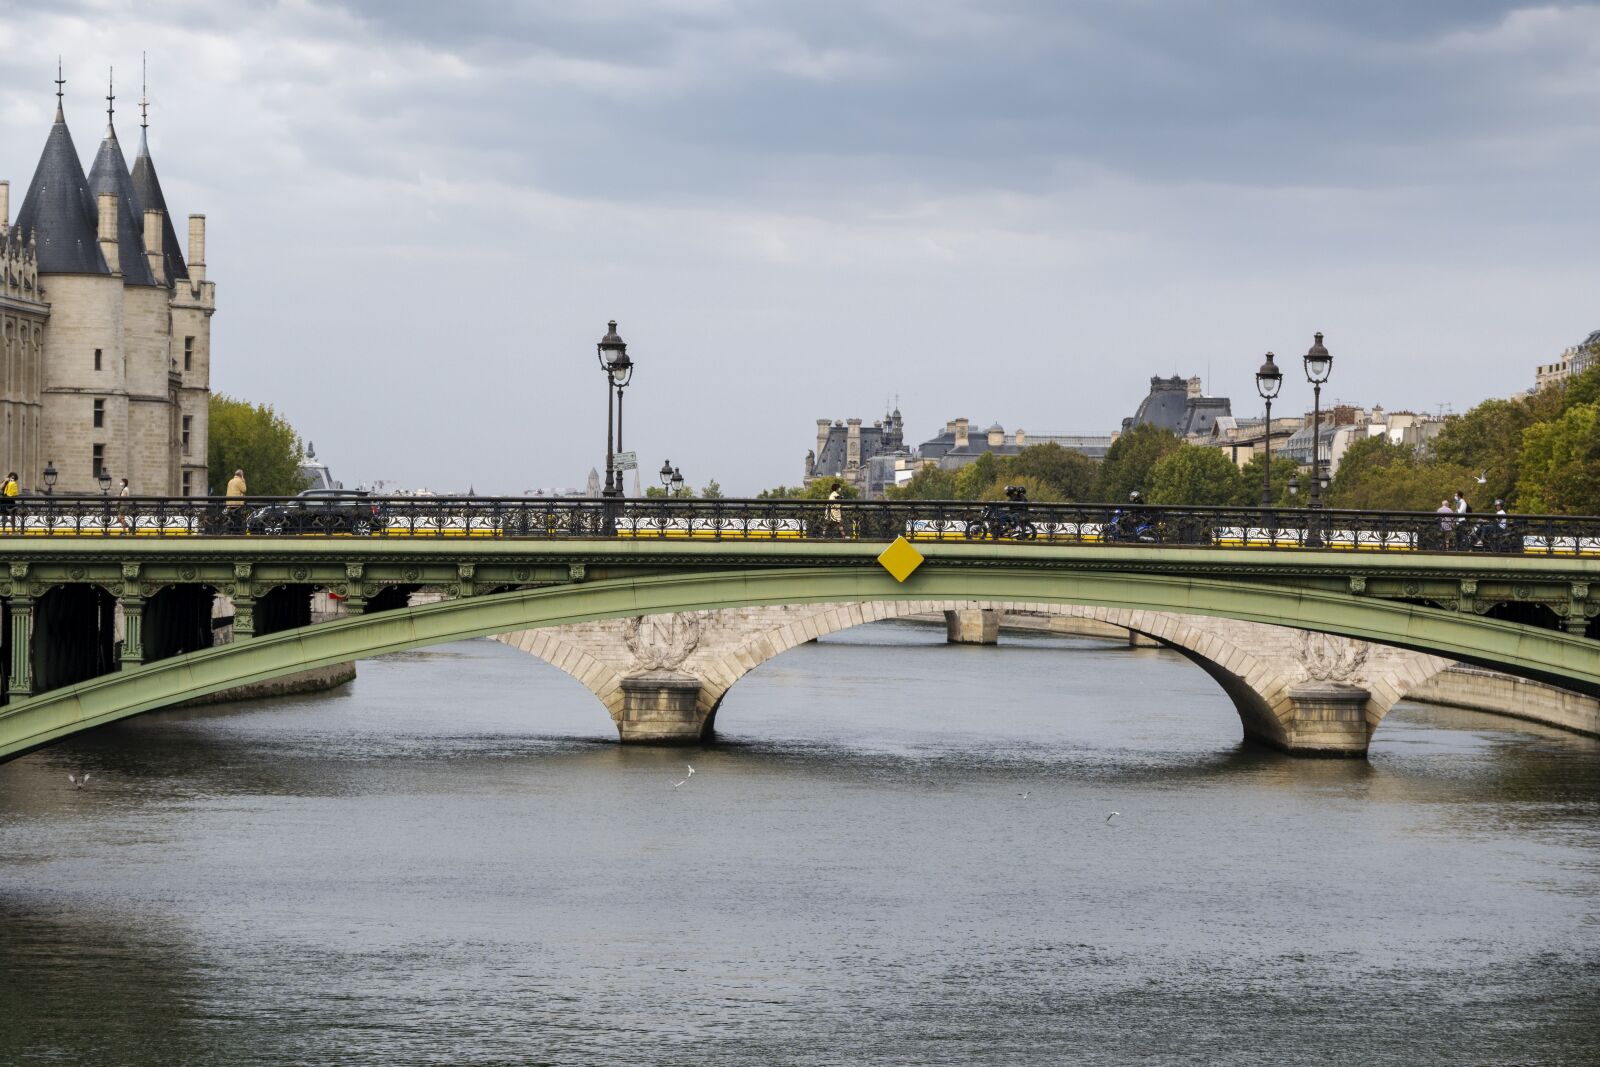 Nikon Z 50 sample photo. Bridge, paris, concierge photography